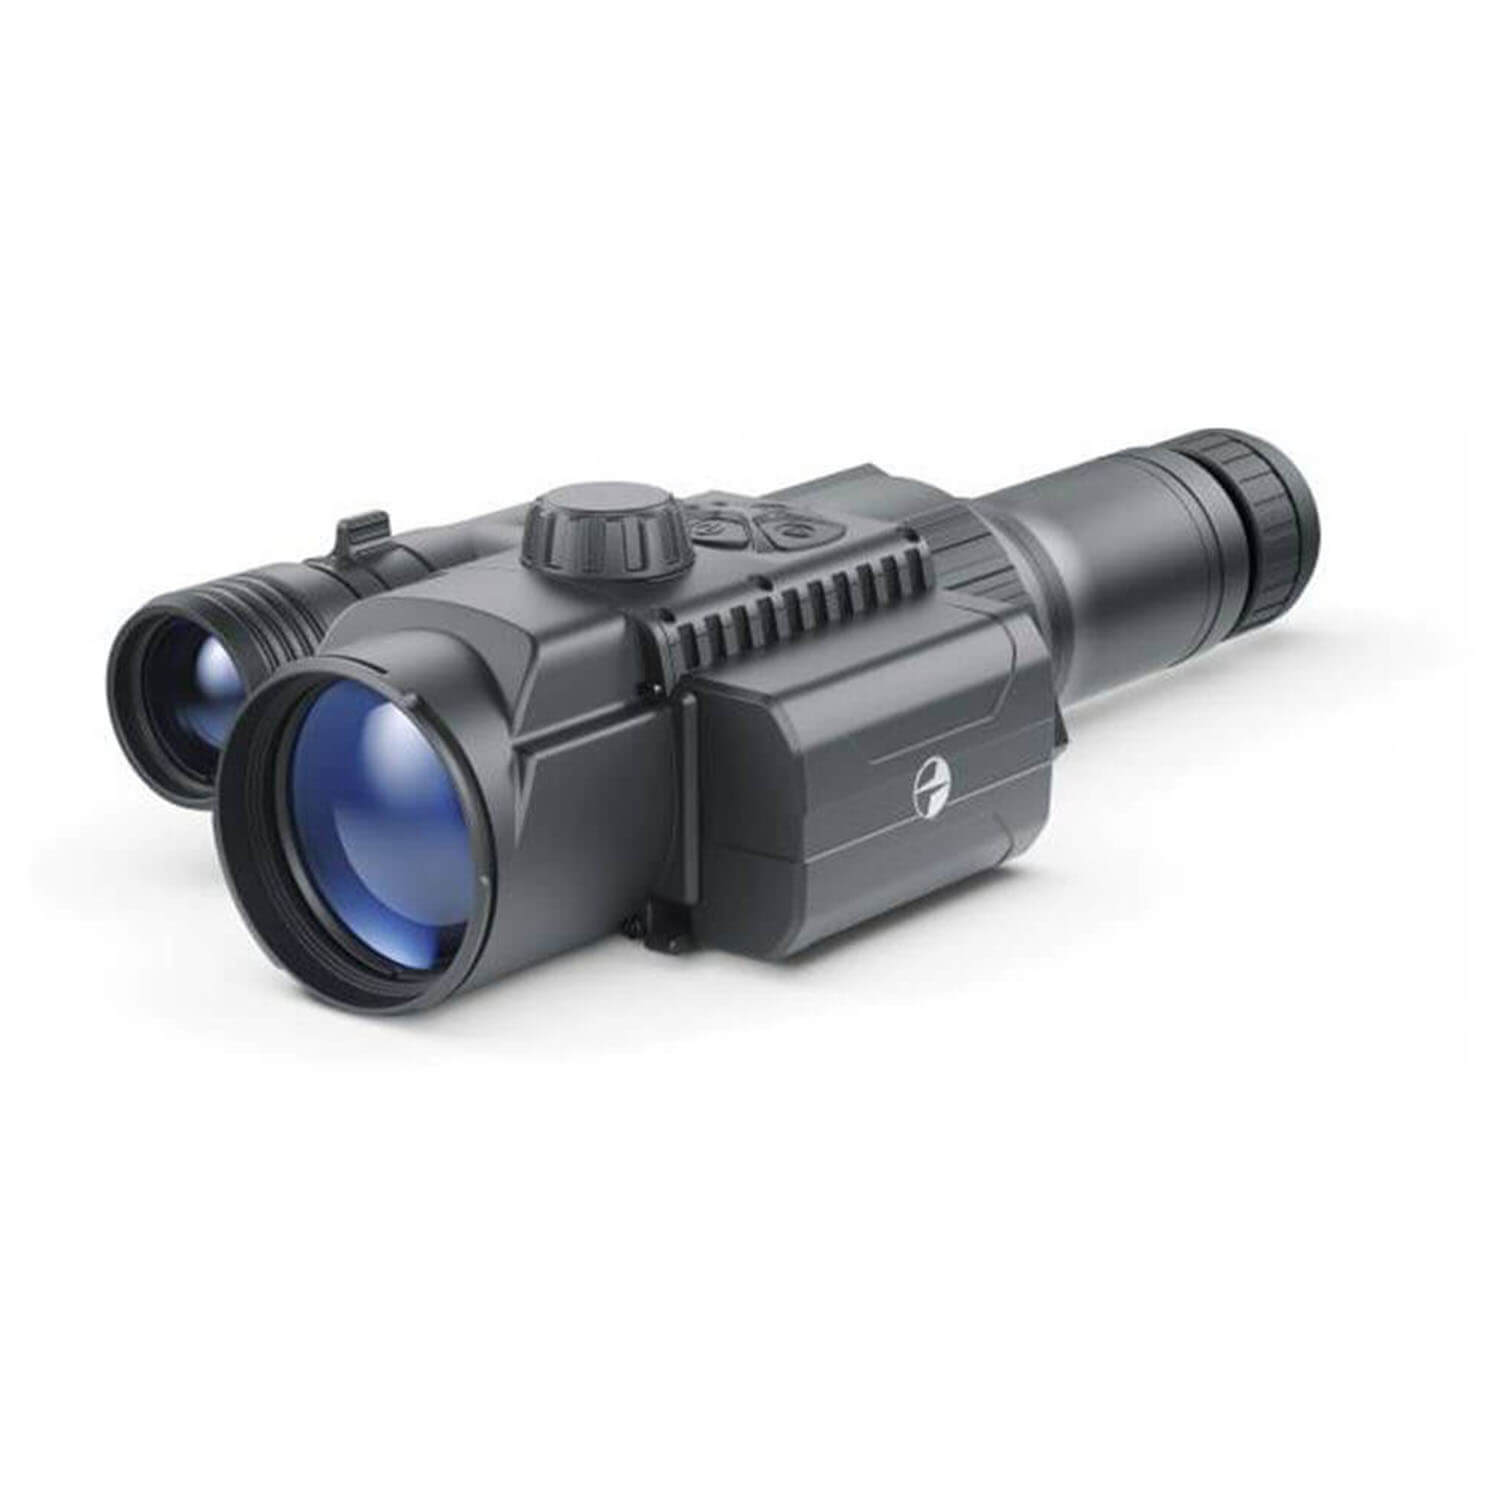 Pulsar FN-455S Digitalnachtsichtgerät - Nachtsichtgeräte